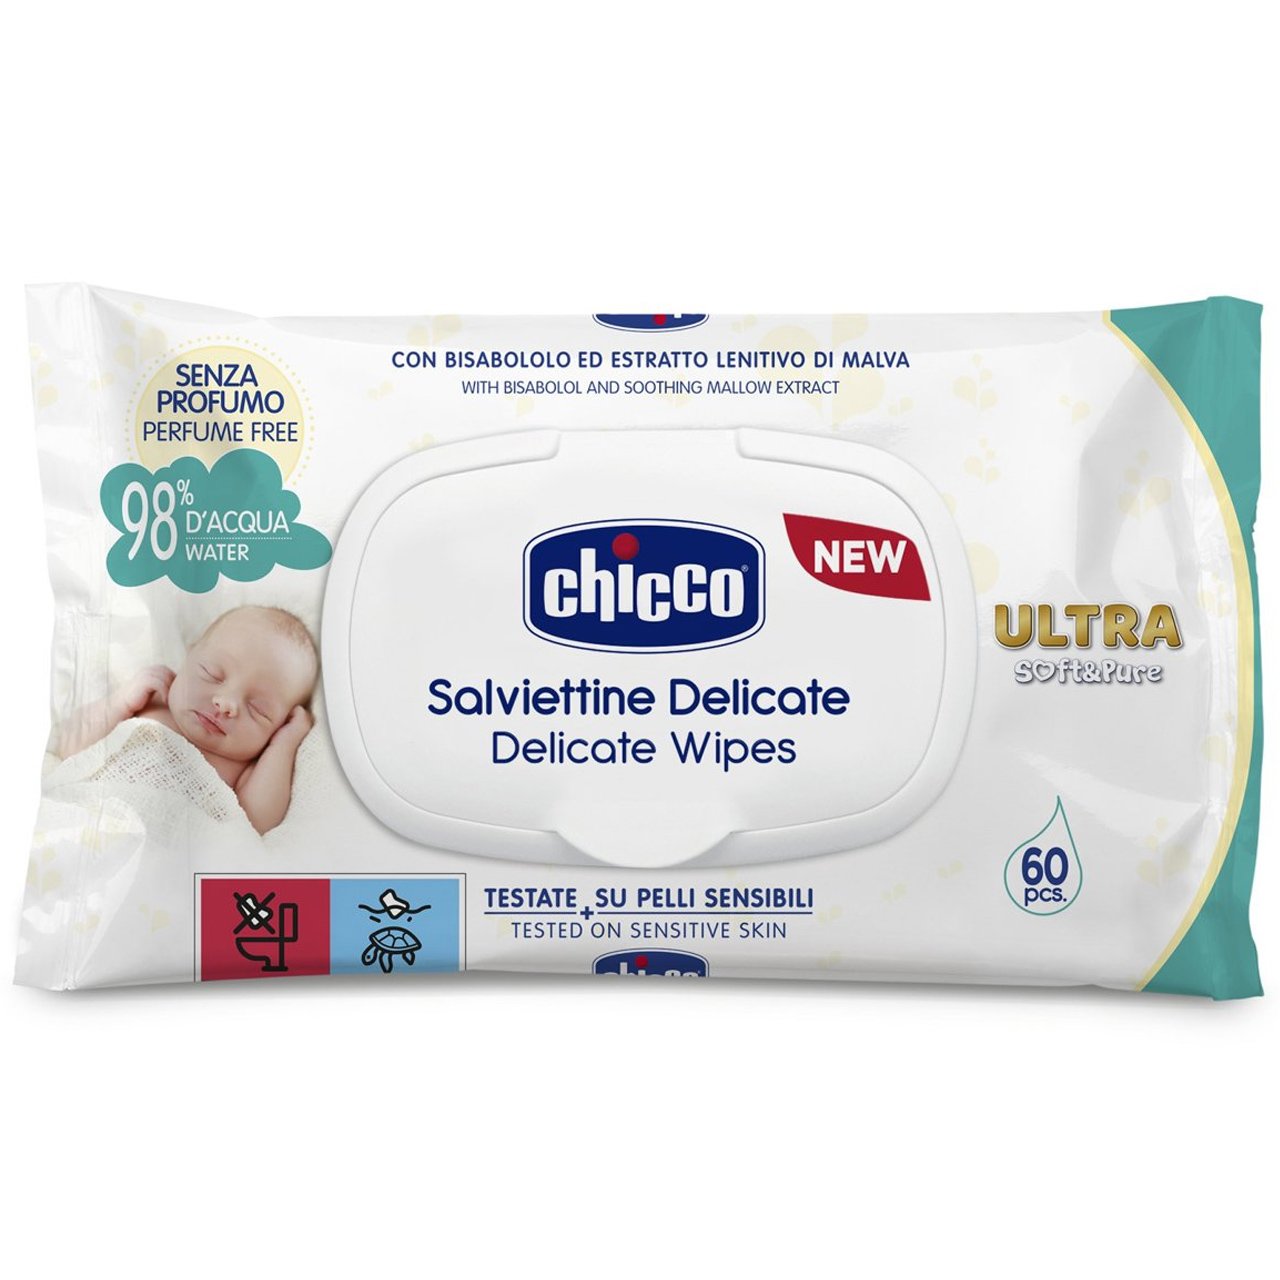 Εικόνα από Chicco Delicate Wipes Ultra Soft & Pure Μωρομάντηλα Διπλής Δράσης για Απαλό & Αποτελεσματικό Καθαρισμό, με Καπάκι 60 Τεμάχια